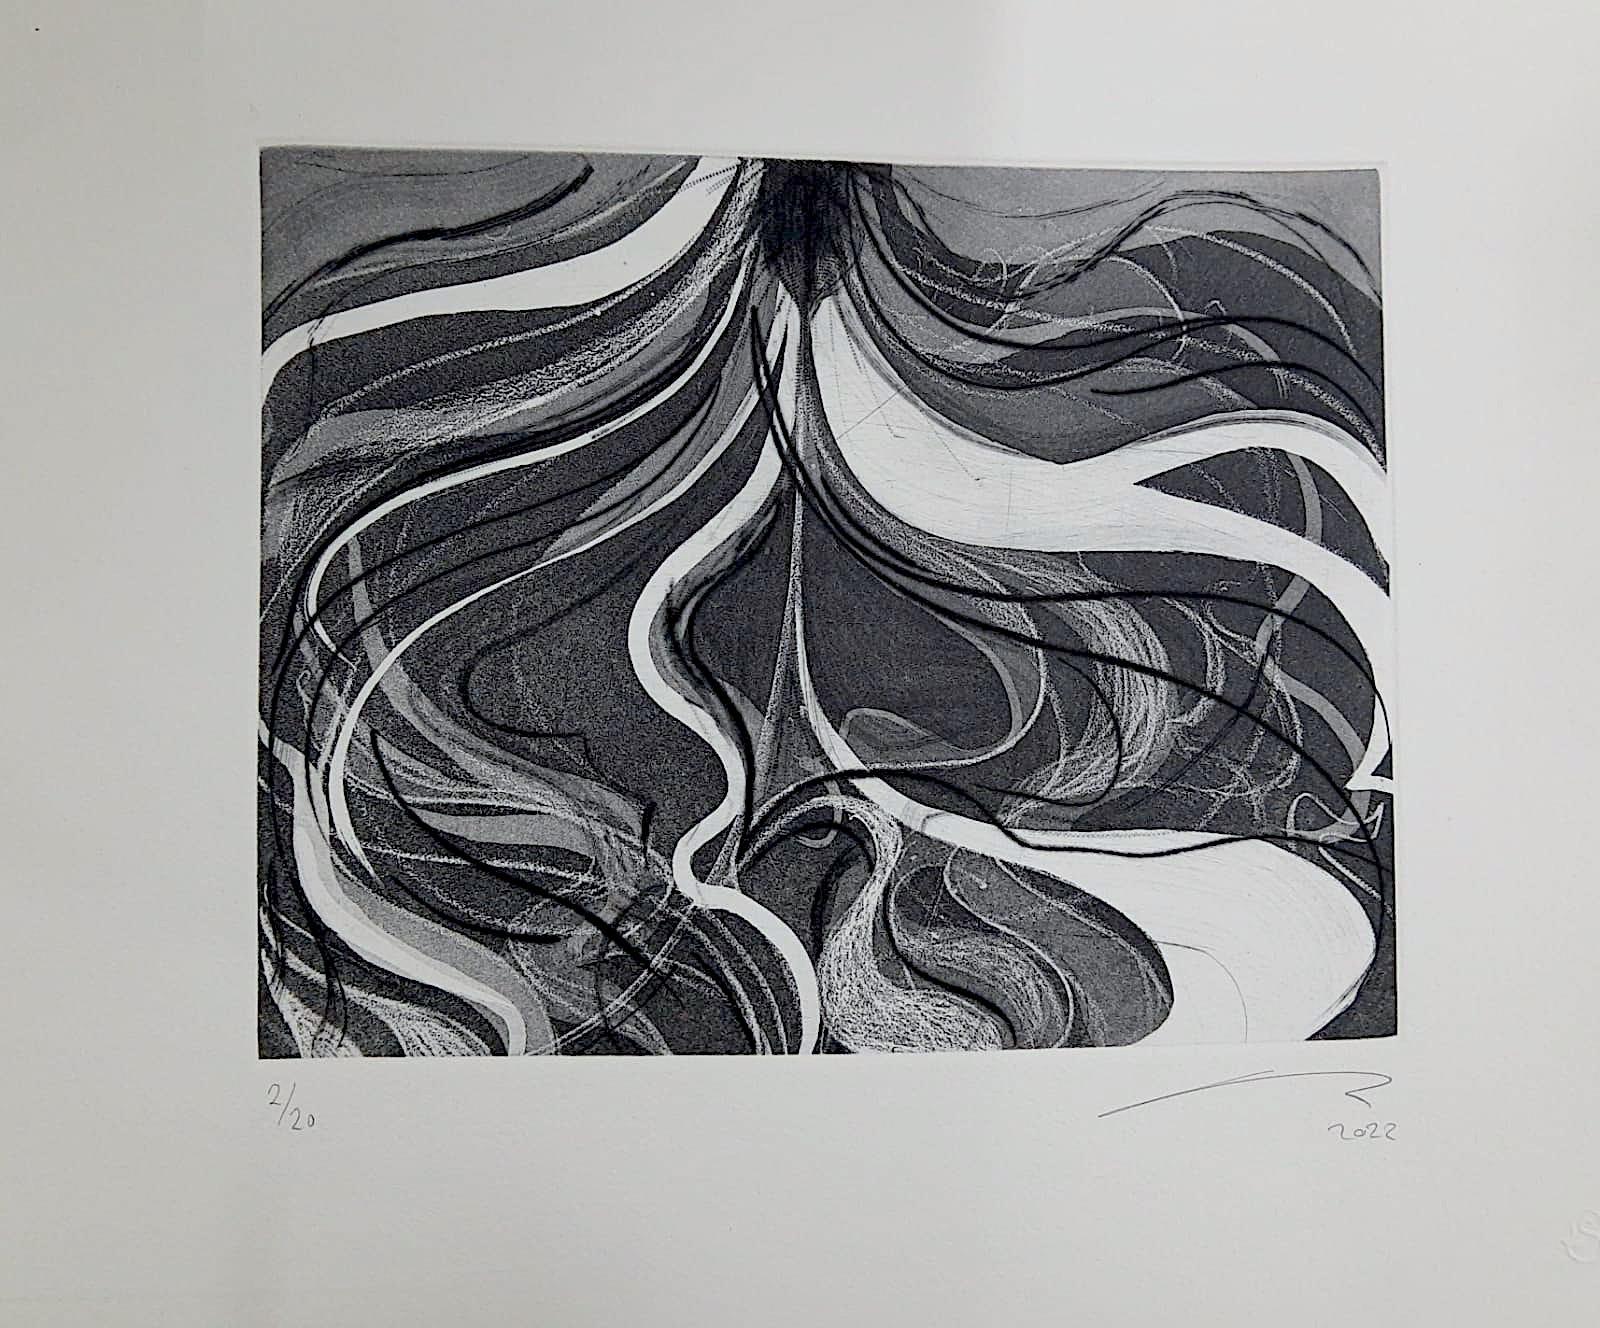 Nicolás Guzmán Abstract Print - "Black and white I" contemporary prints abstract black and white lines 